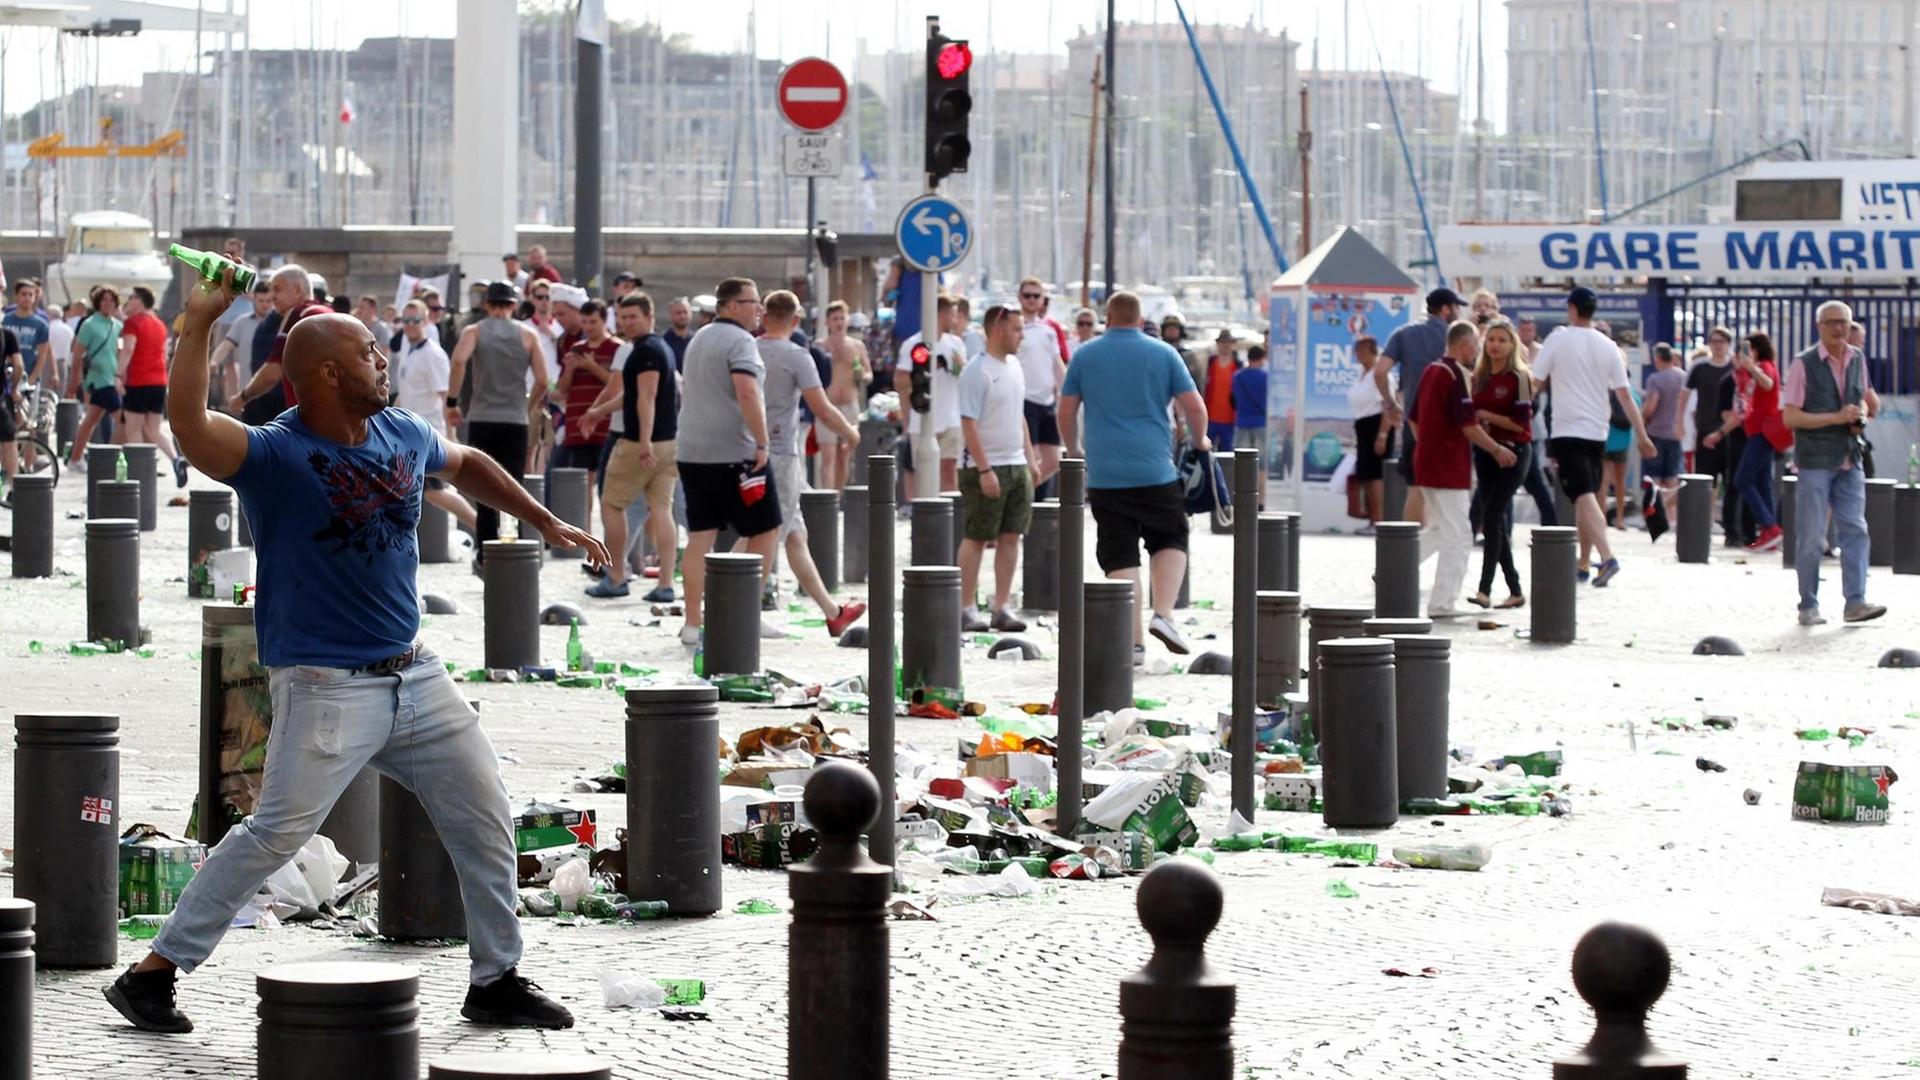 Ein Mann wirft eine Flasche, auf den Straßen liegt Müll, im Hintergrund Menschen.